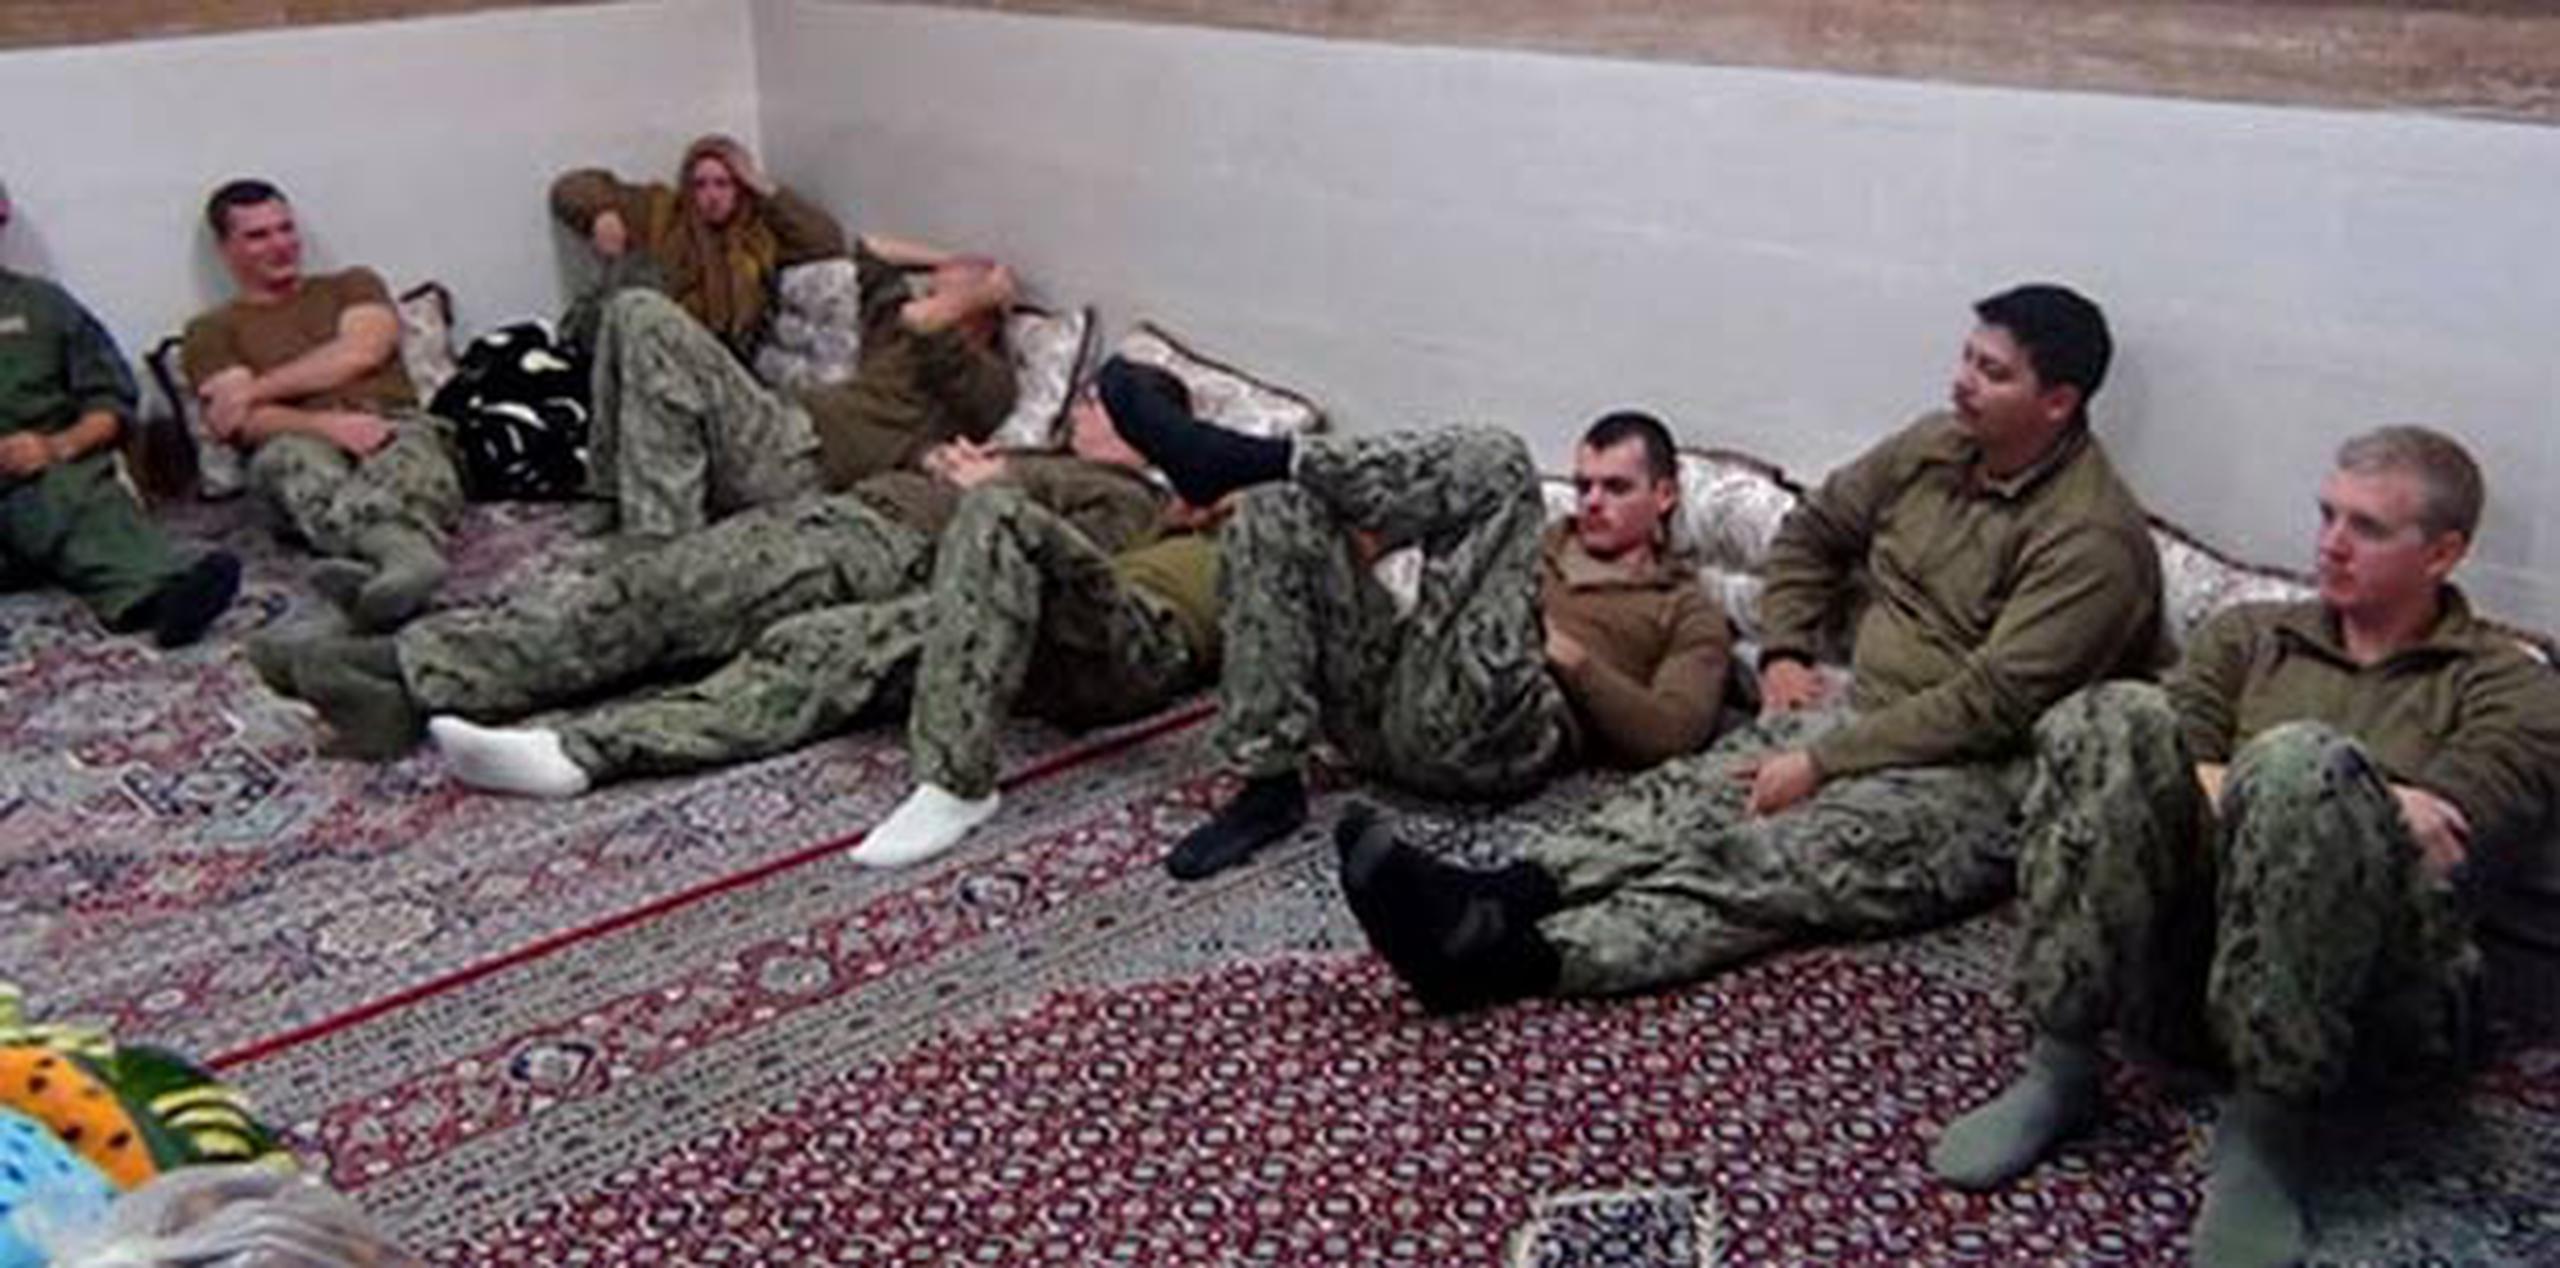 Los diez marineros del ejército de Estados Unidos que estaban retenidos en Irán fueron liberados el miércoles. (AP)